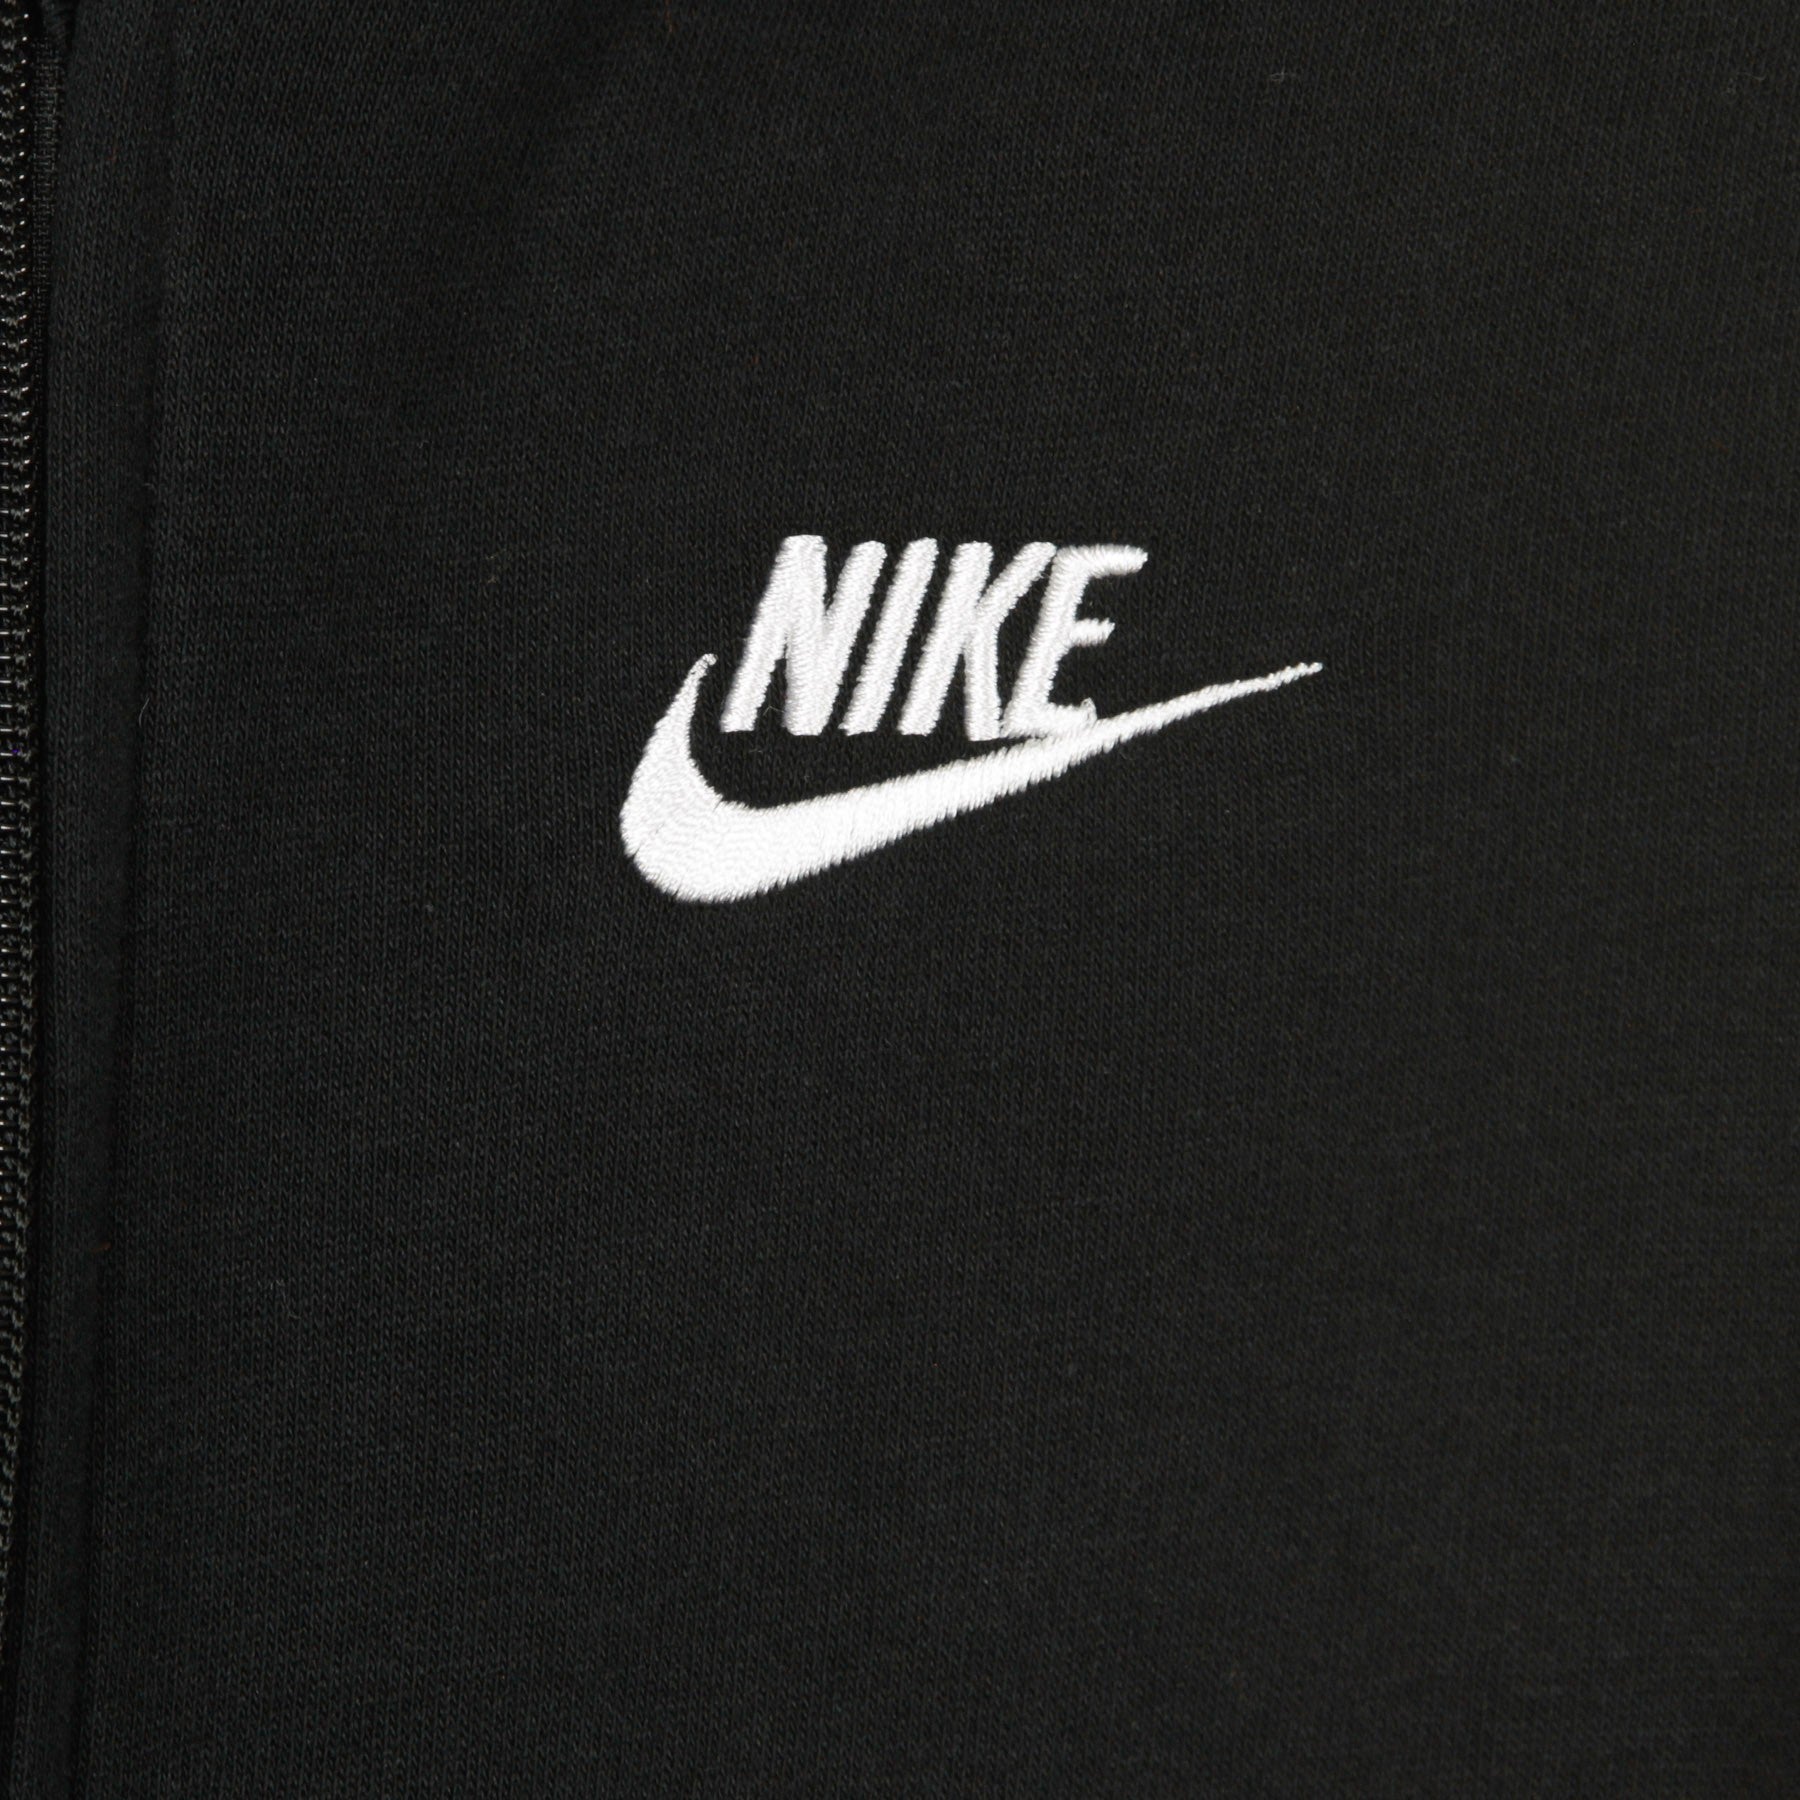 Nike, Completo Tuta Ragazzo Sportswear Core, 